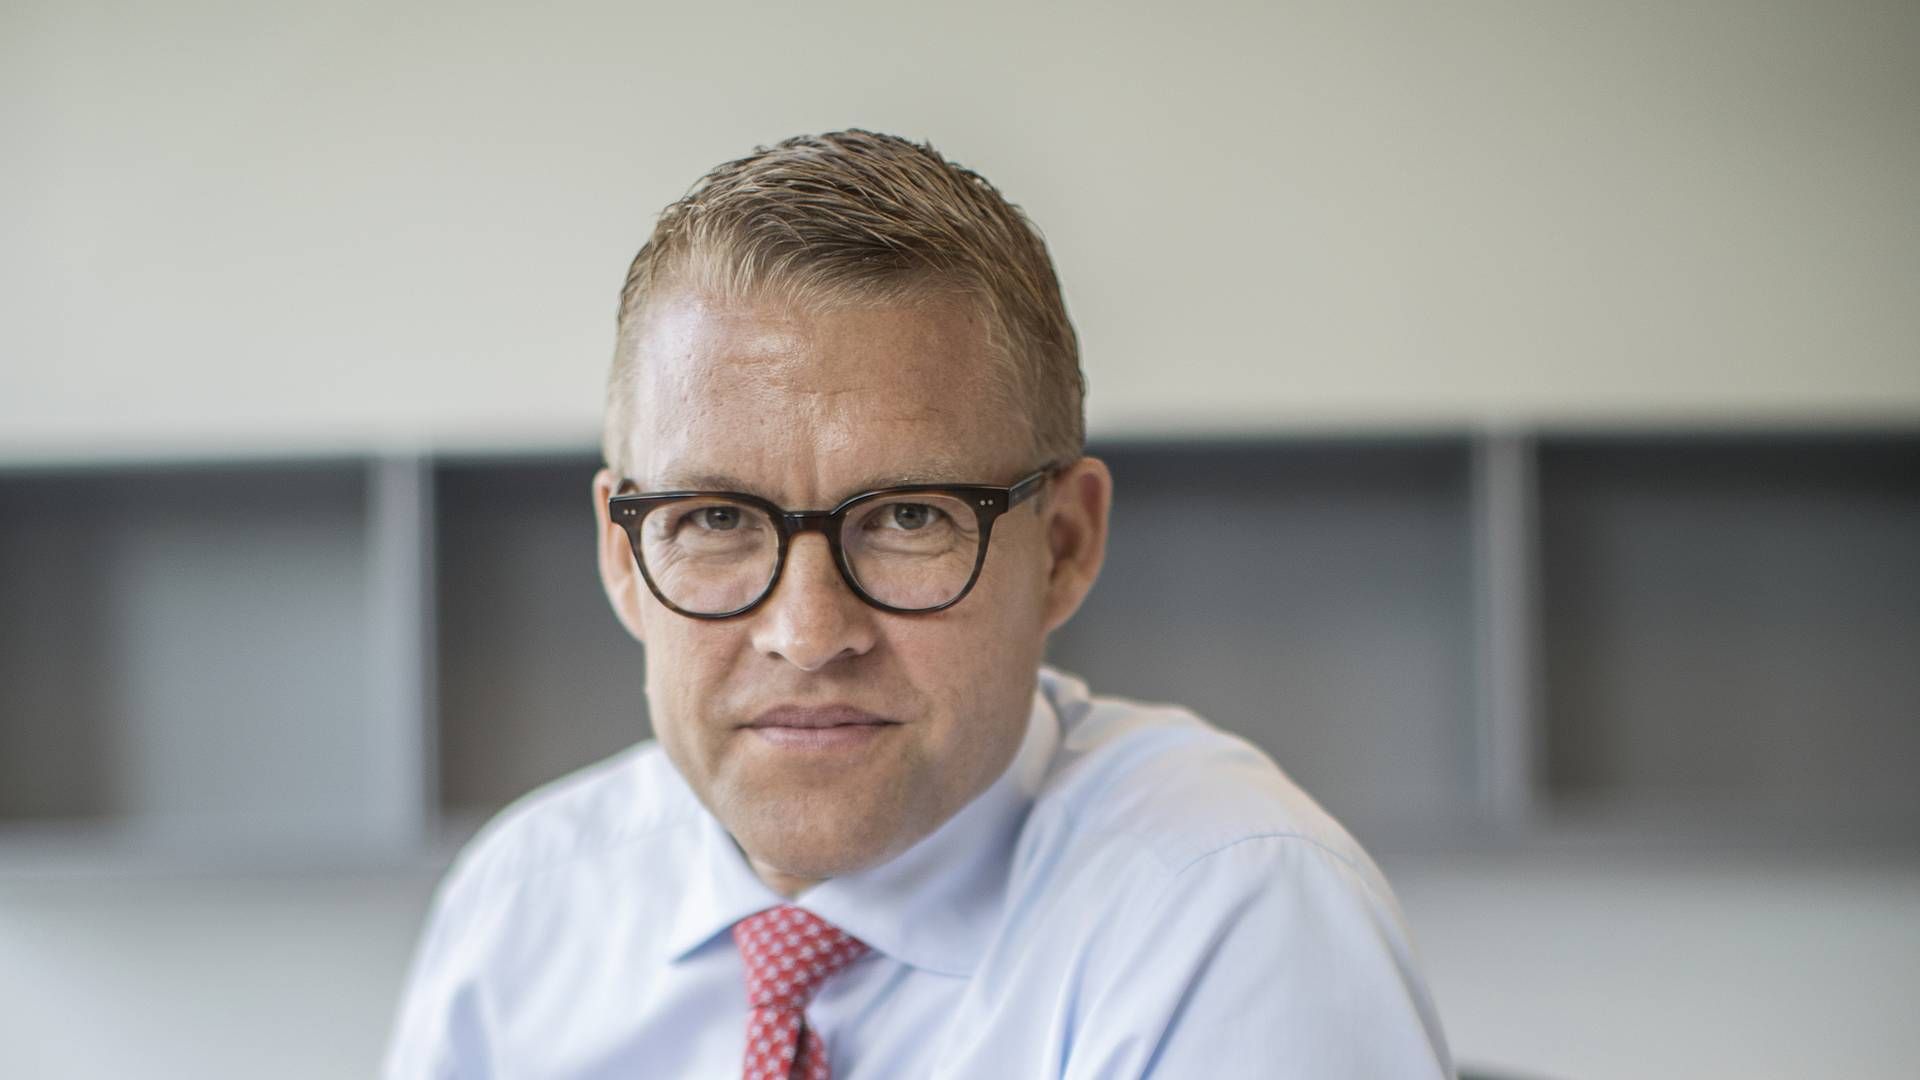 Adm. direktør Jakob Riis har lukket og solgt flere dele af Falck i 2020. | Foto: Stine Bidstrup/ERH